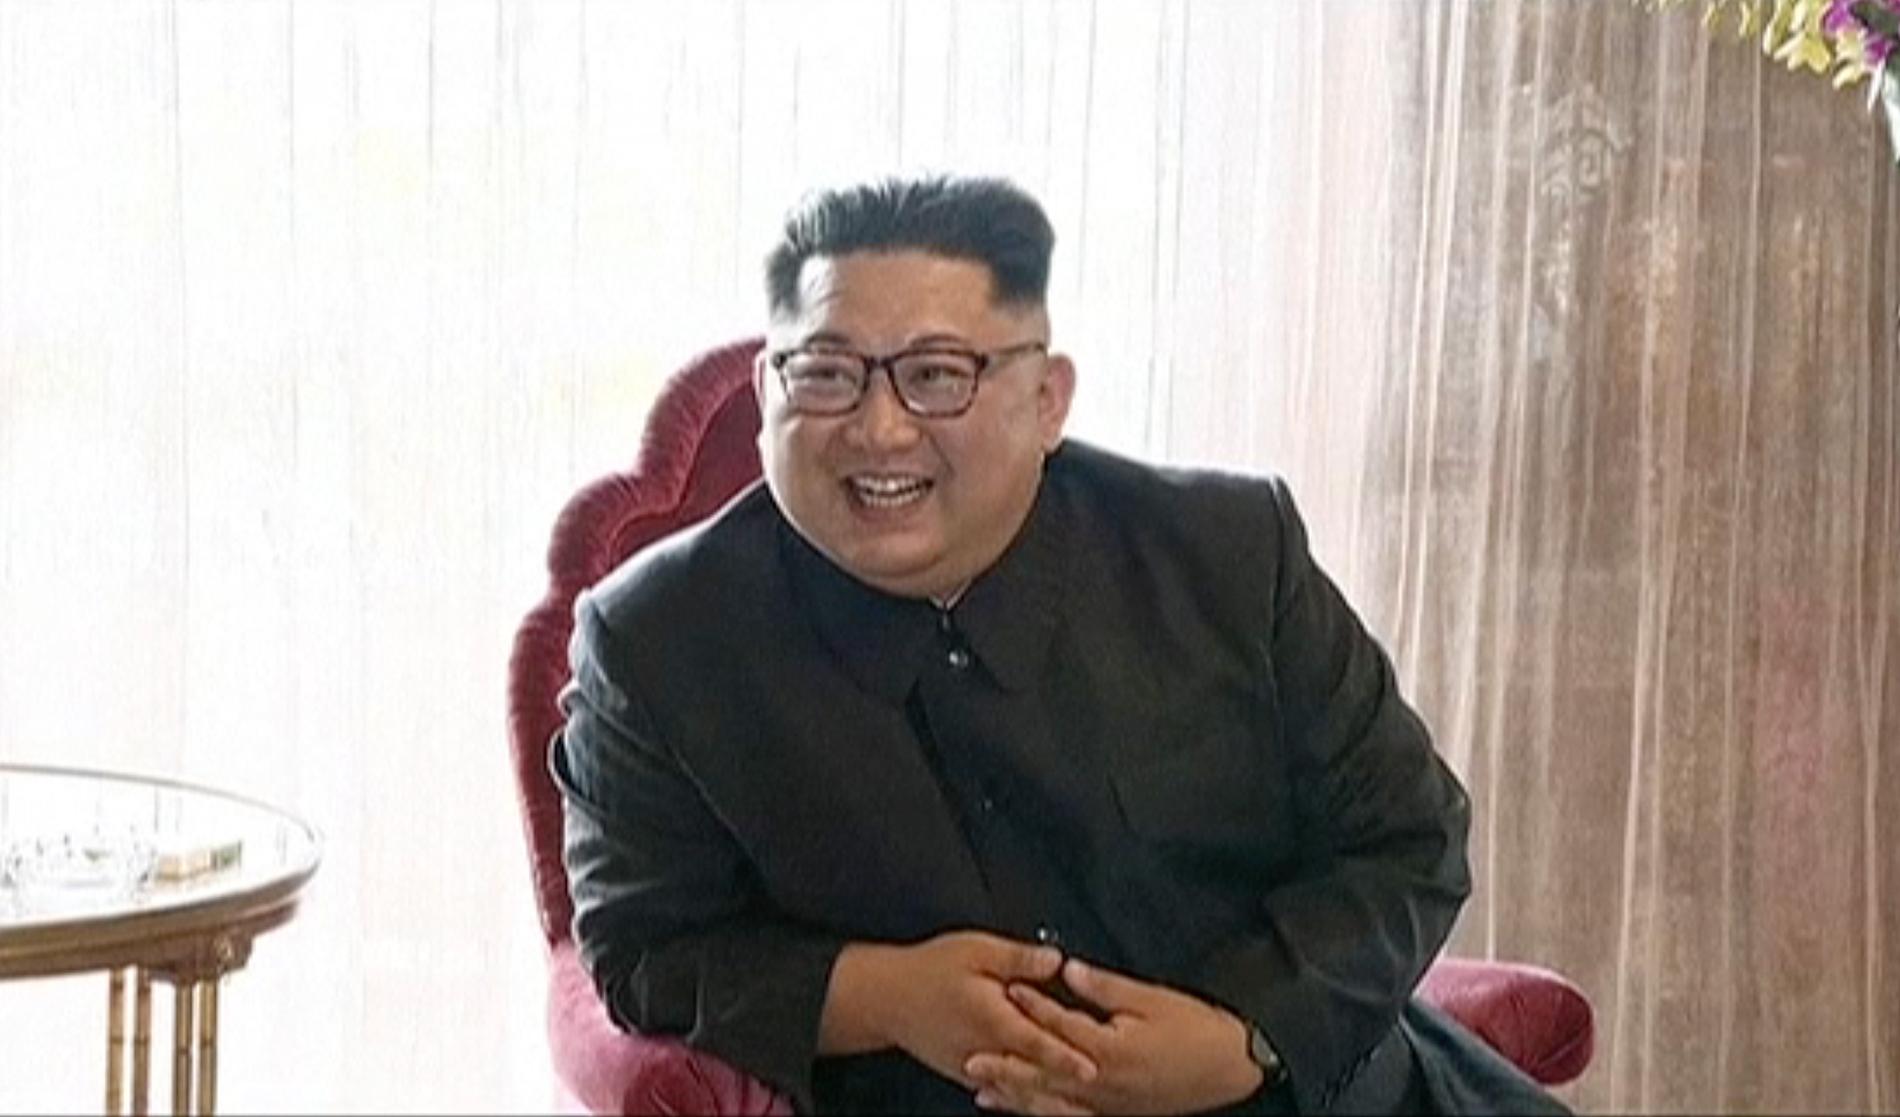 Kim Jong-Un på sitt hotell i samband med mötet med Donald Trump i Singapore i förra veckan.